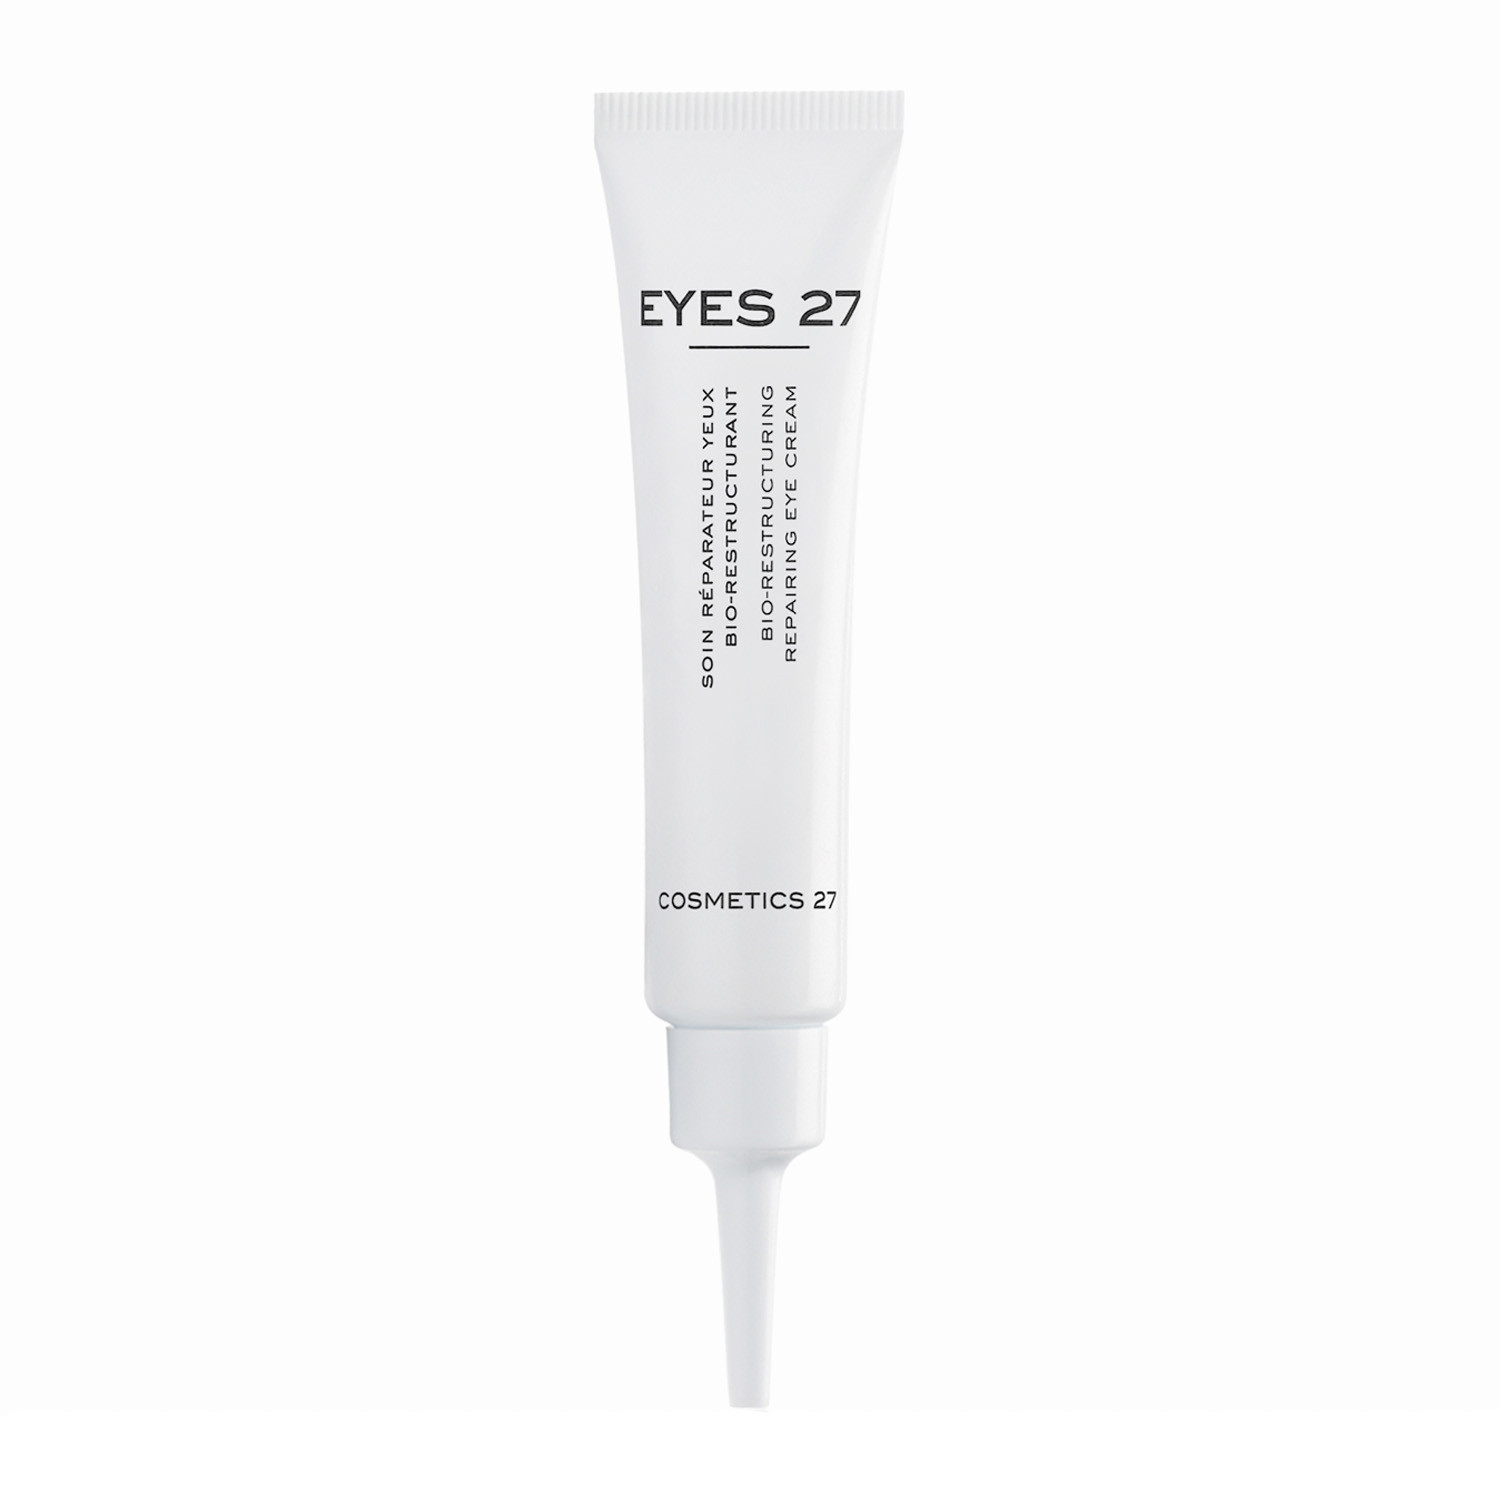 Cosmetics 27 Eyes 27 Bio-Restructuring Cell Repair Eye Cream - Відновлюючий біокрем для реструктуризації шкіри під очима